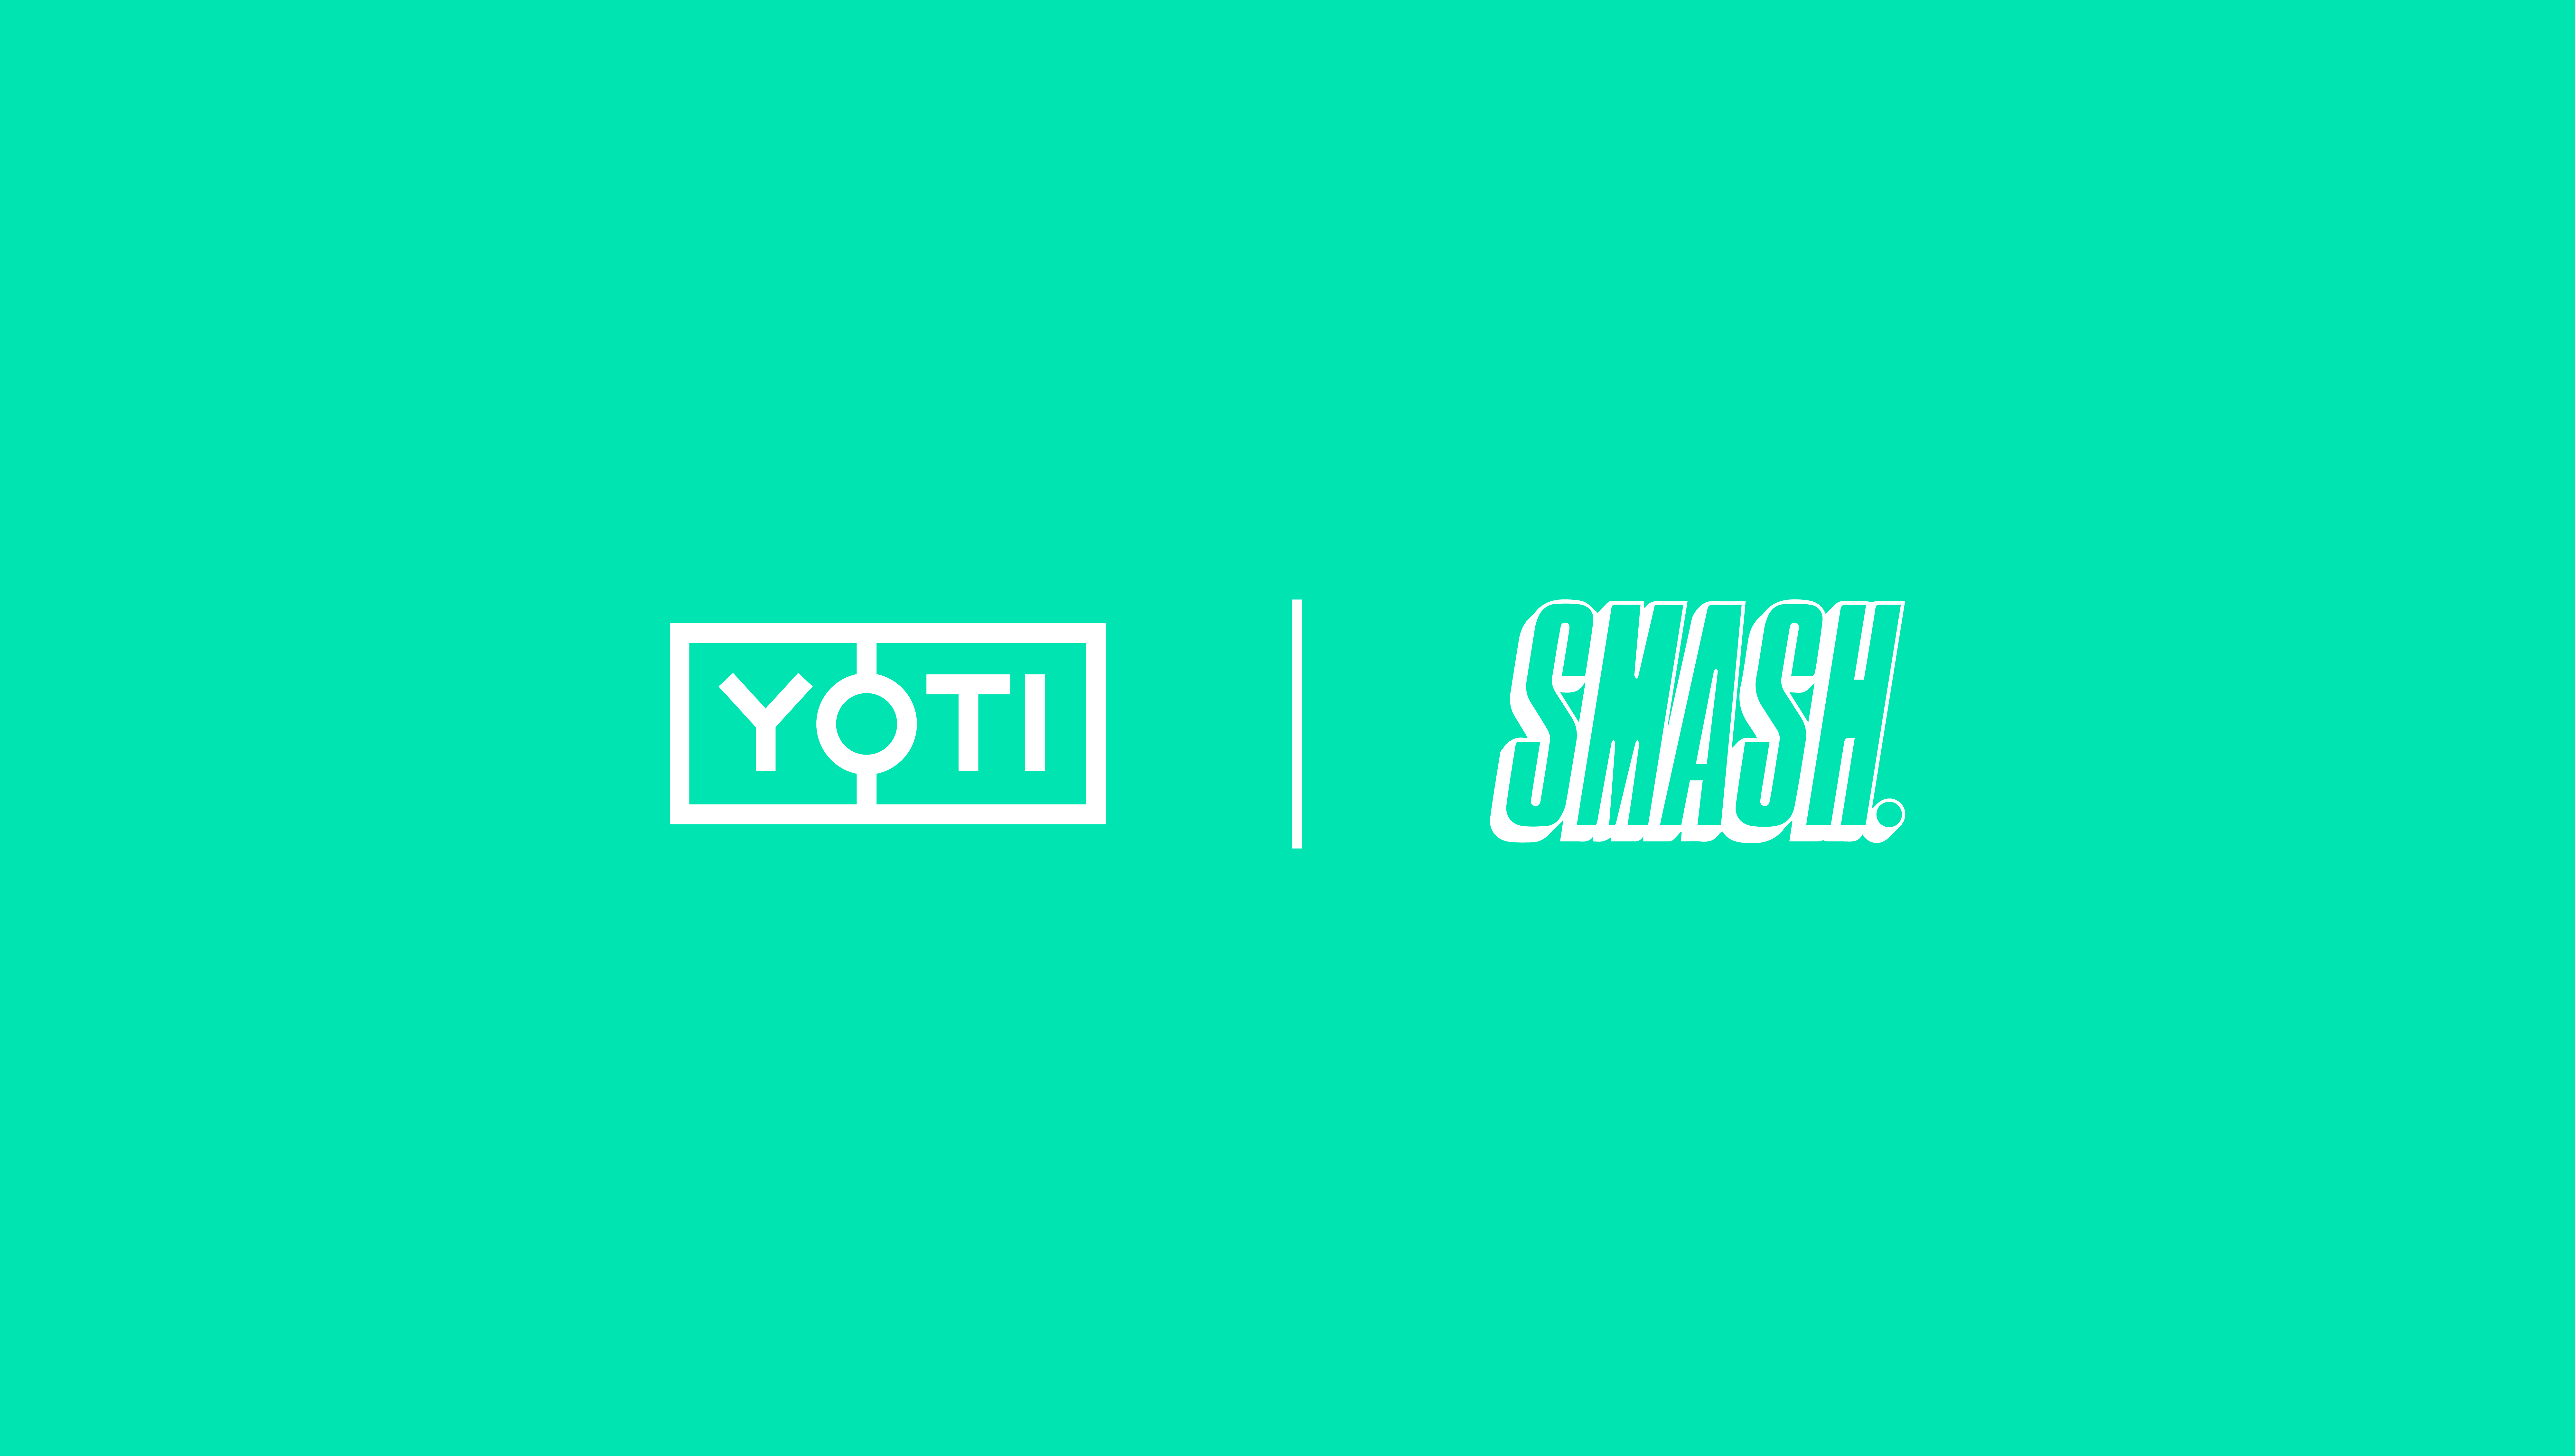 Yoti and Smash logos presented together